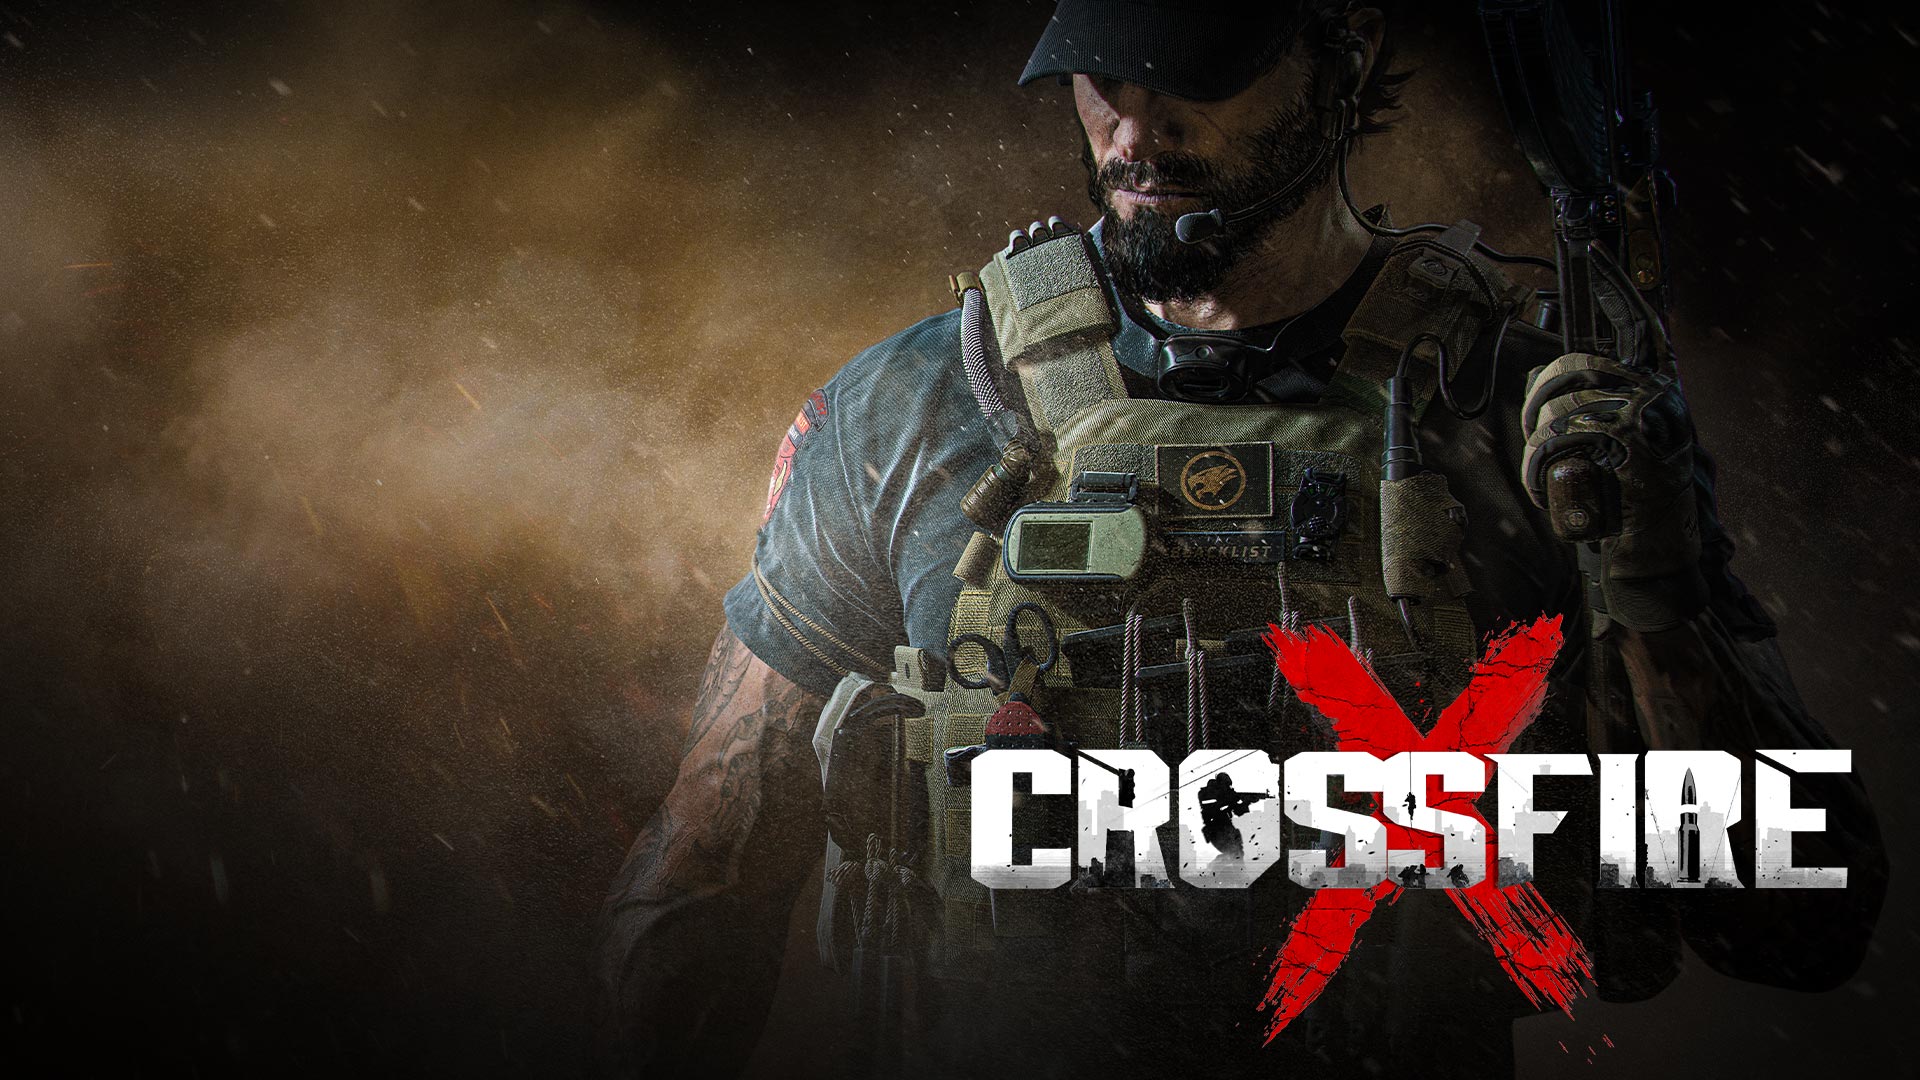 CrossfireX, um homem fortemente armado no meio de fumo e cinzas.